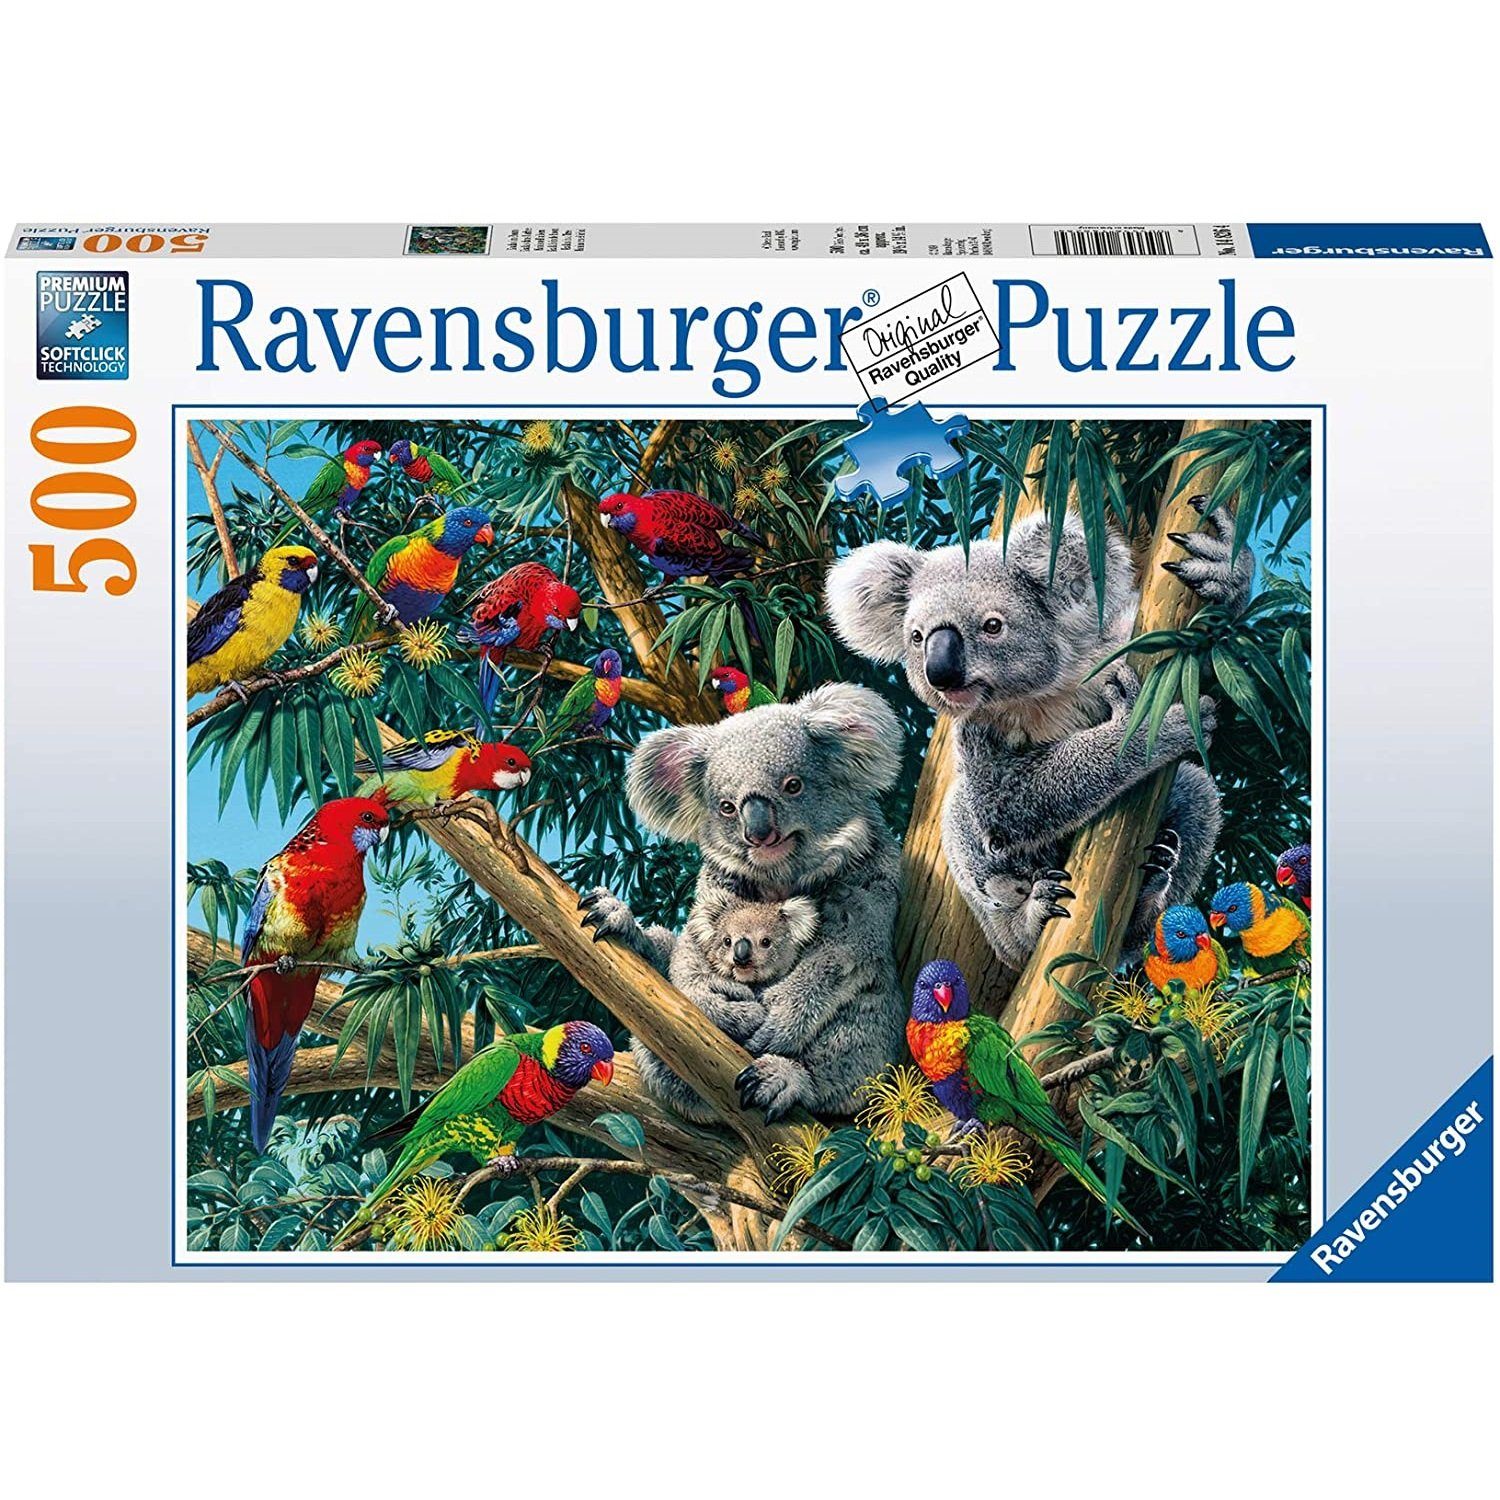 500 Ravensburger Puzzle, im Puzzleteile Baum, Koalas 500 Ravensburger Puzzle Teile -